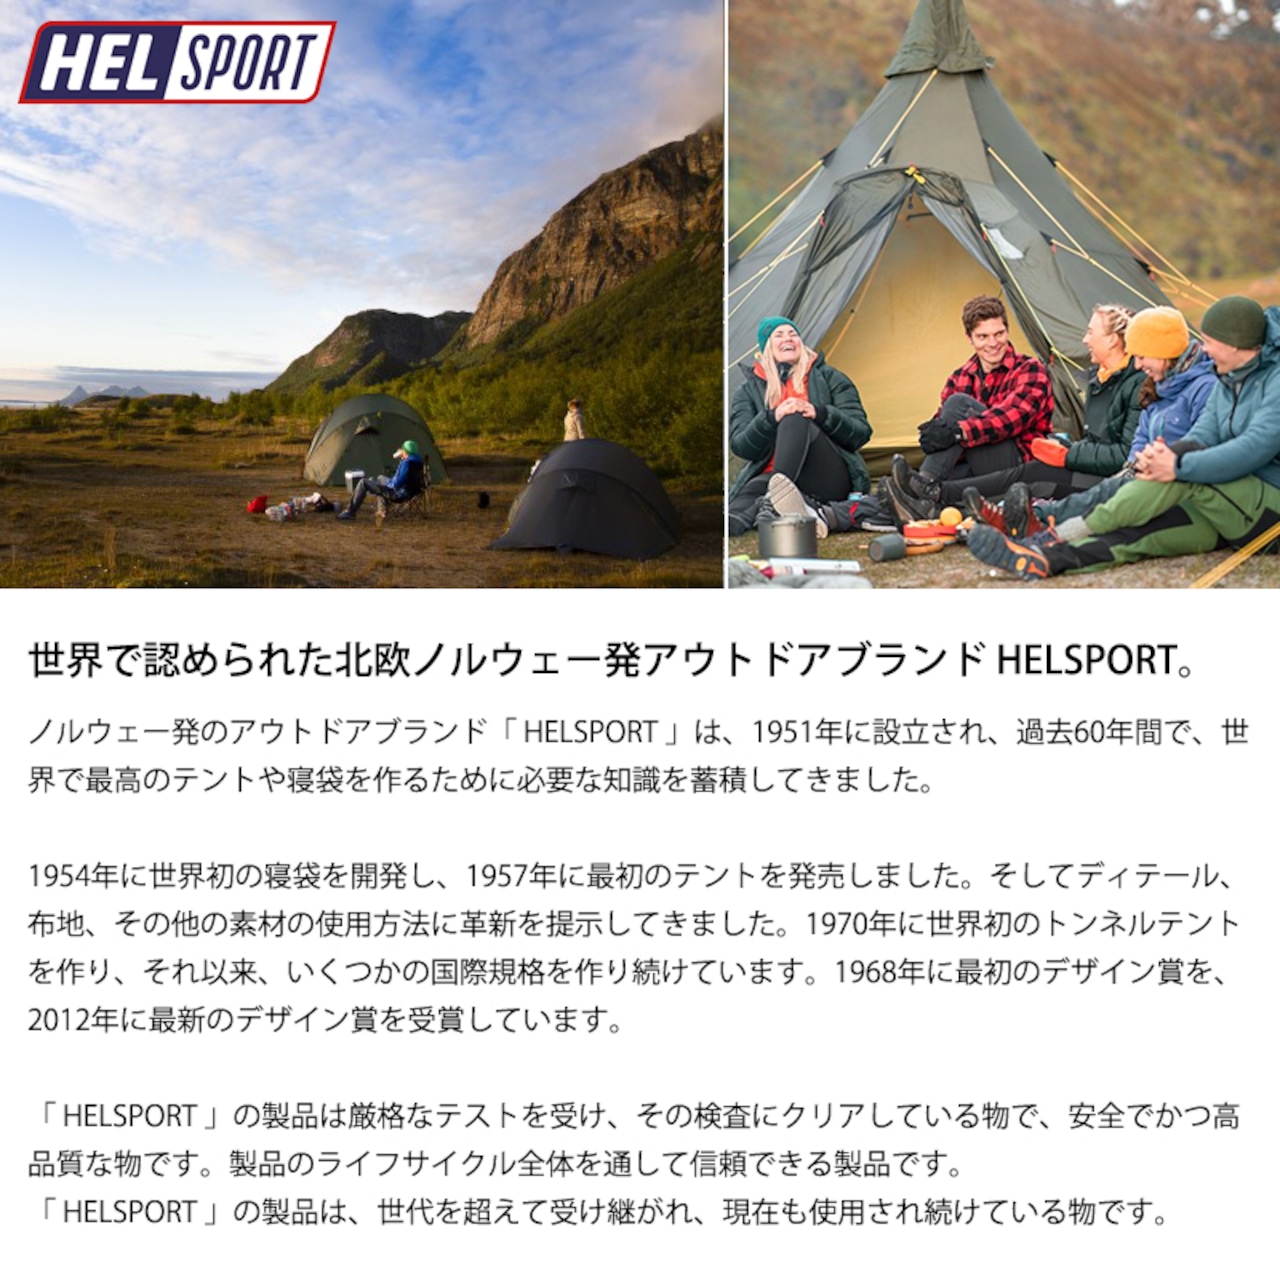 HELSPORT（ヘルスポート）【フルセット】Varanger Dome 8-10 ( バランゲルドーム 8-10人用 )